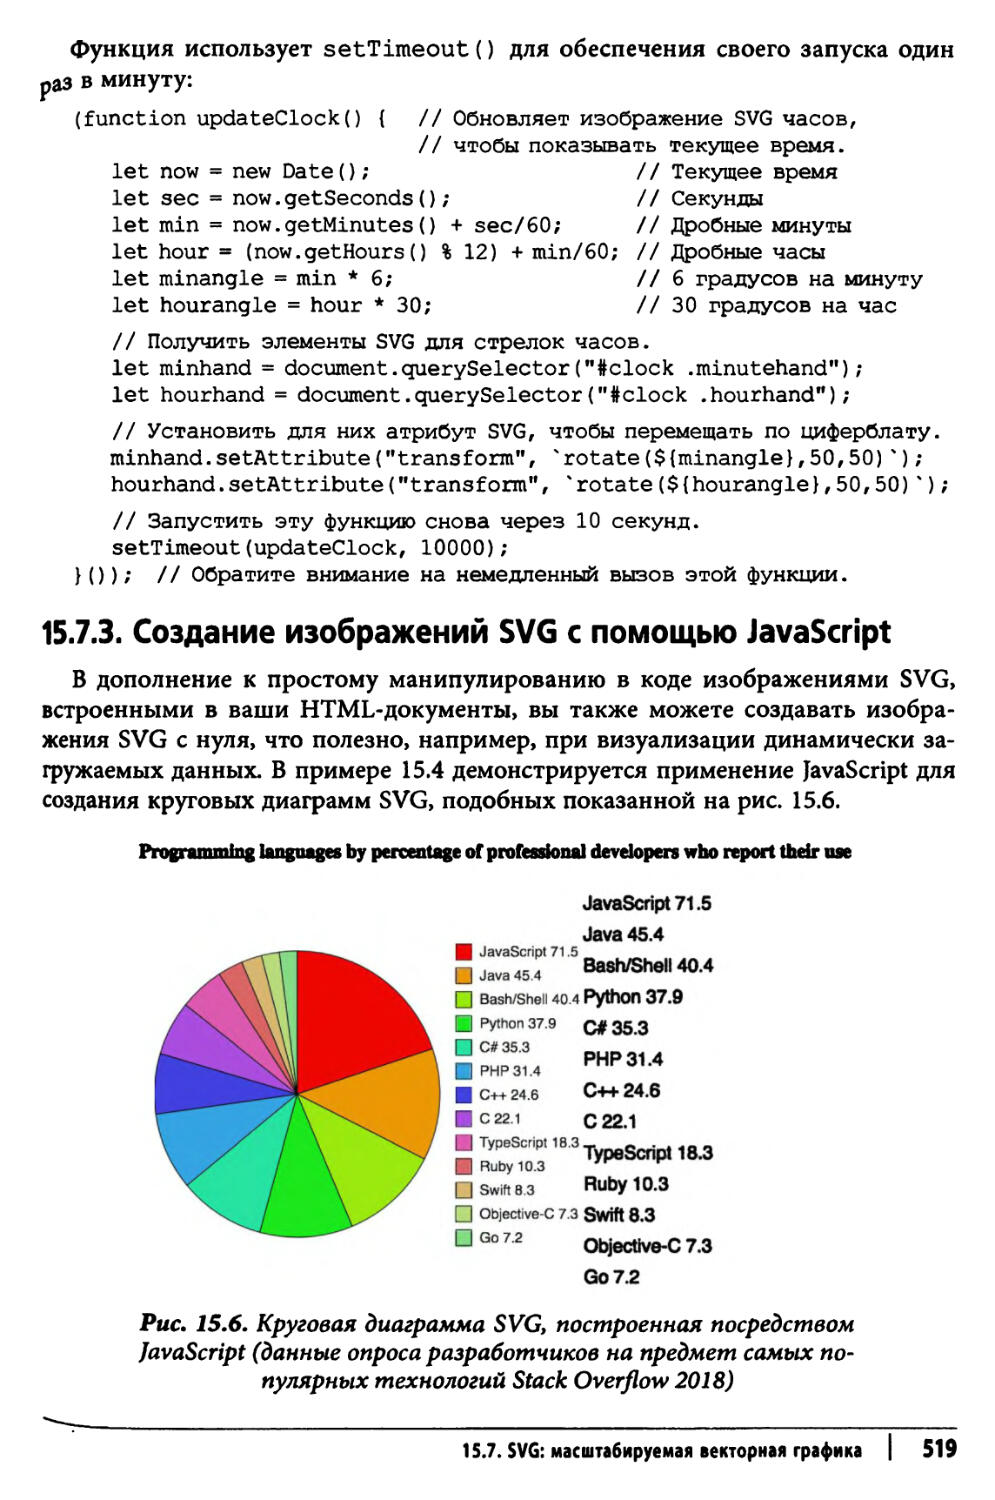 15.7.3. Создание изображений SVG с помощью JavaScript